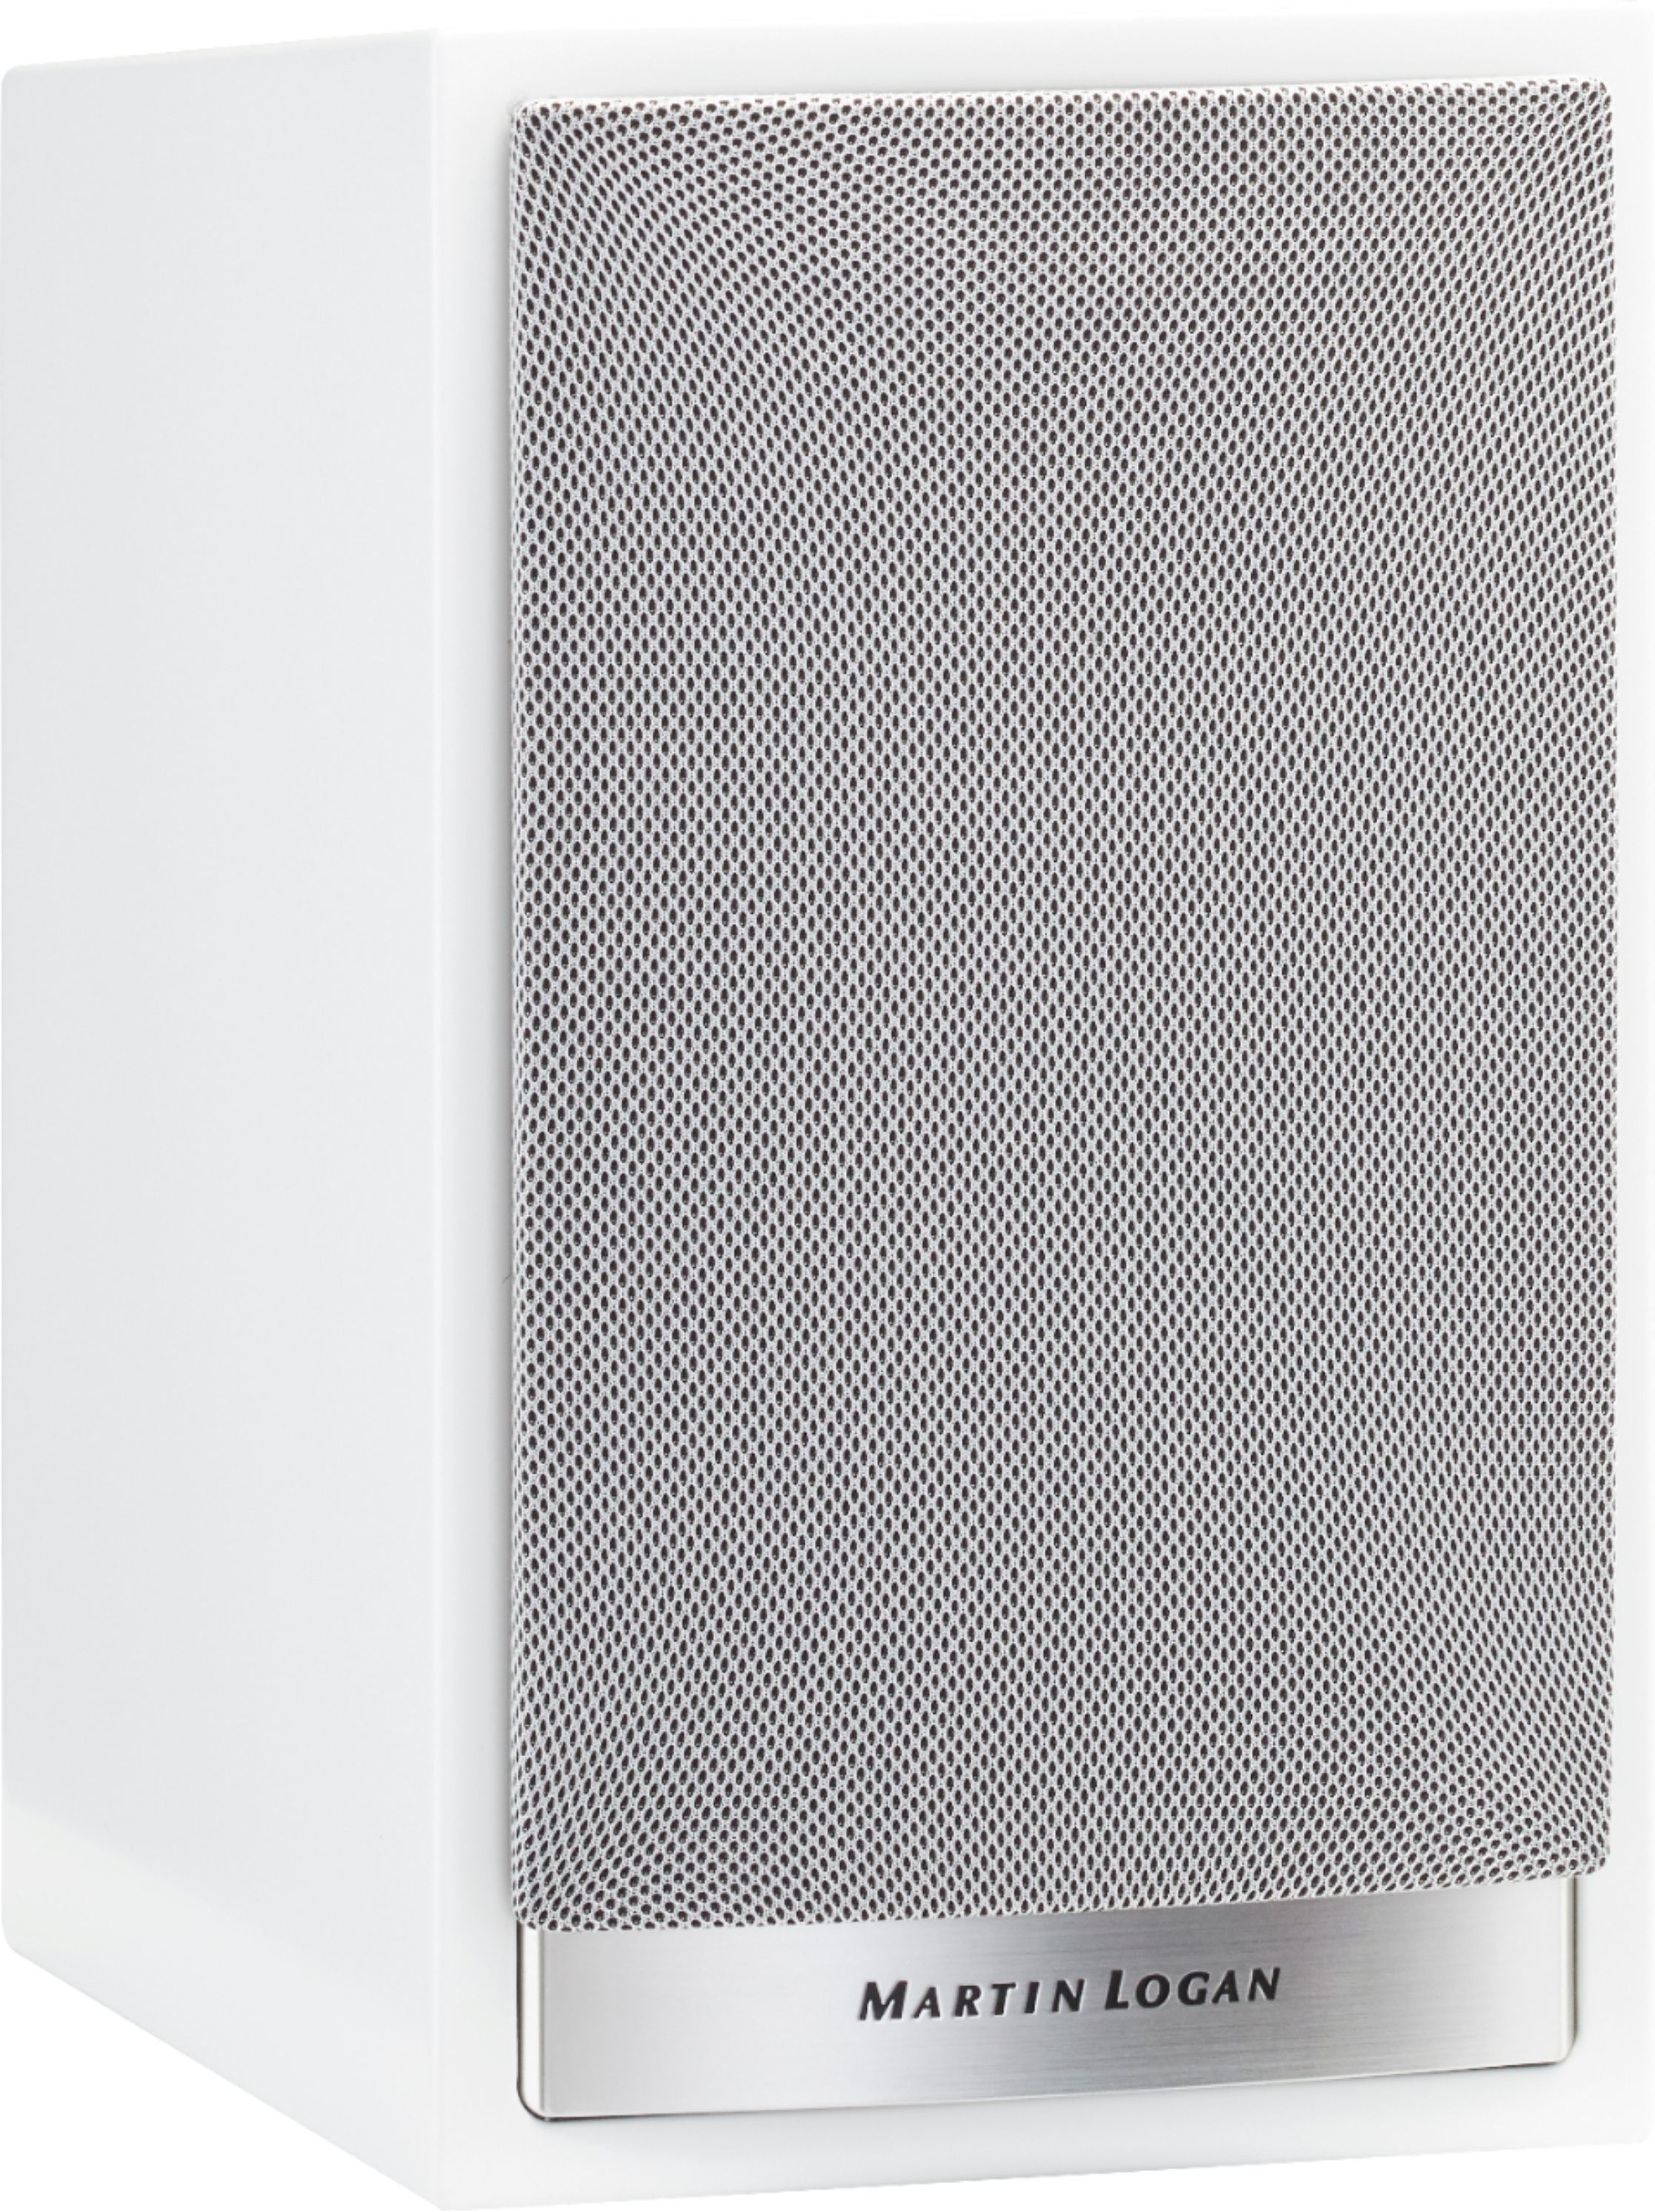 Angle View: Bowers & Wilkins - 700 Series 2-way Bookshelf Speaker w/5" midbass (pair) - White